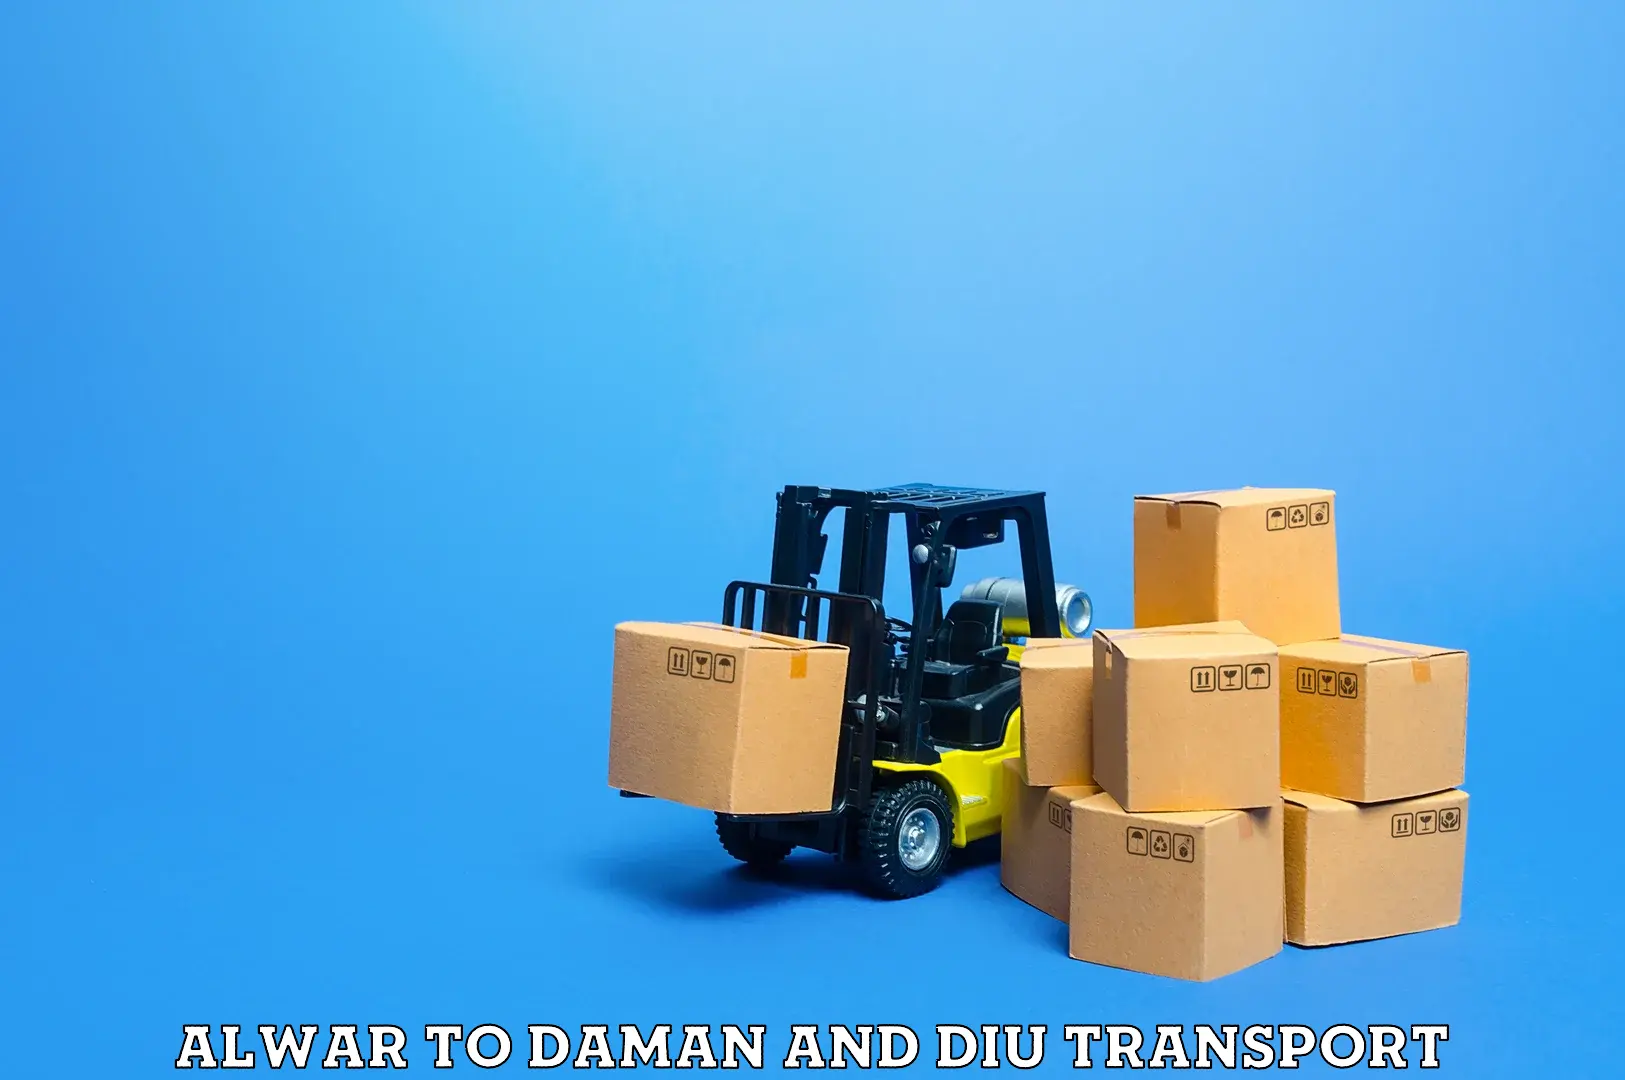 Daily parcel service transport Alwar to Daman and Diu